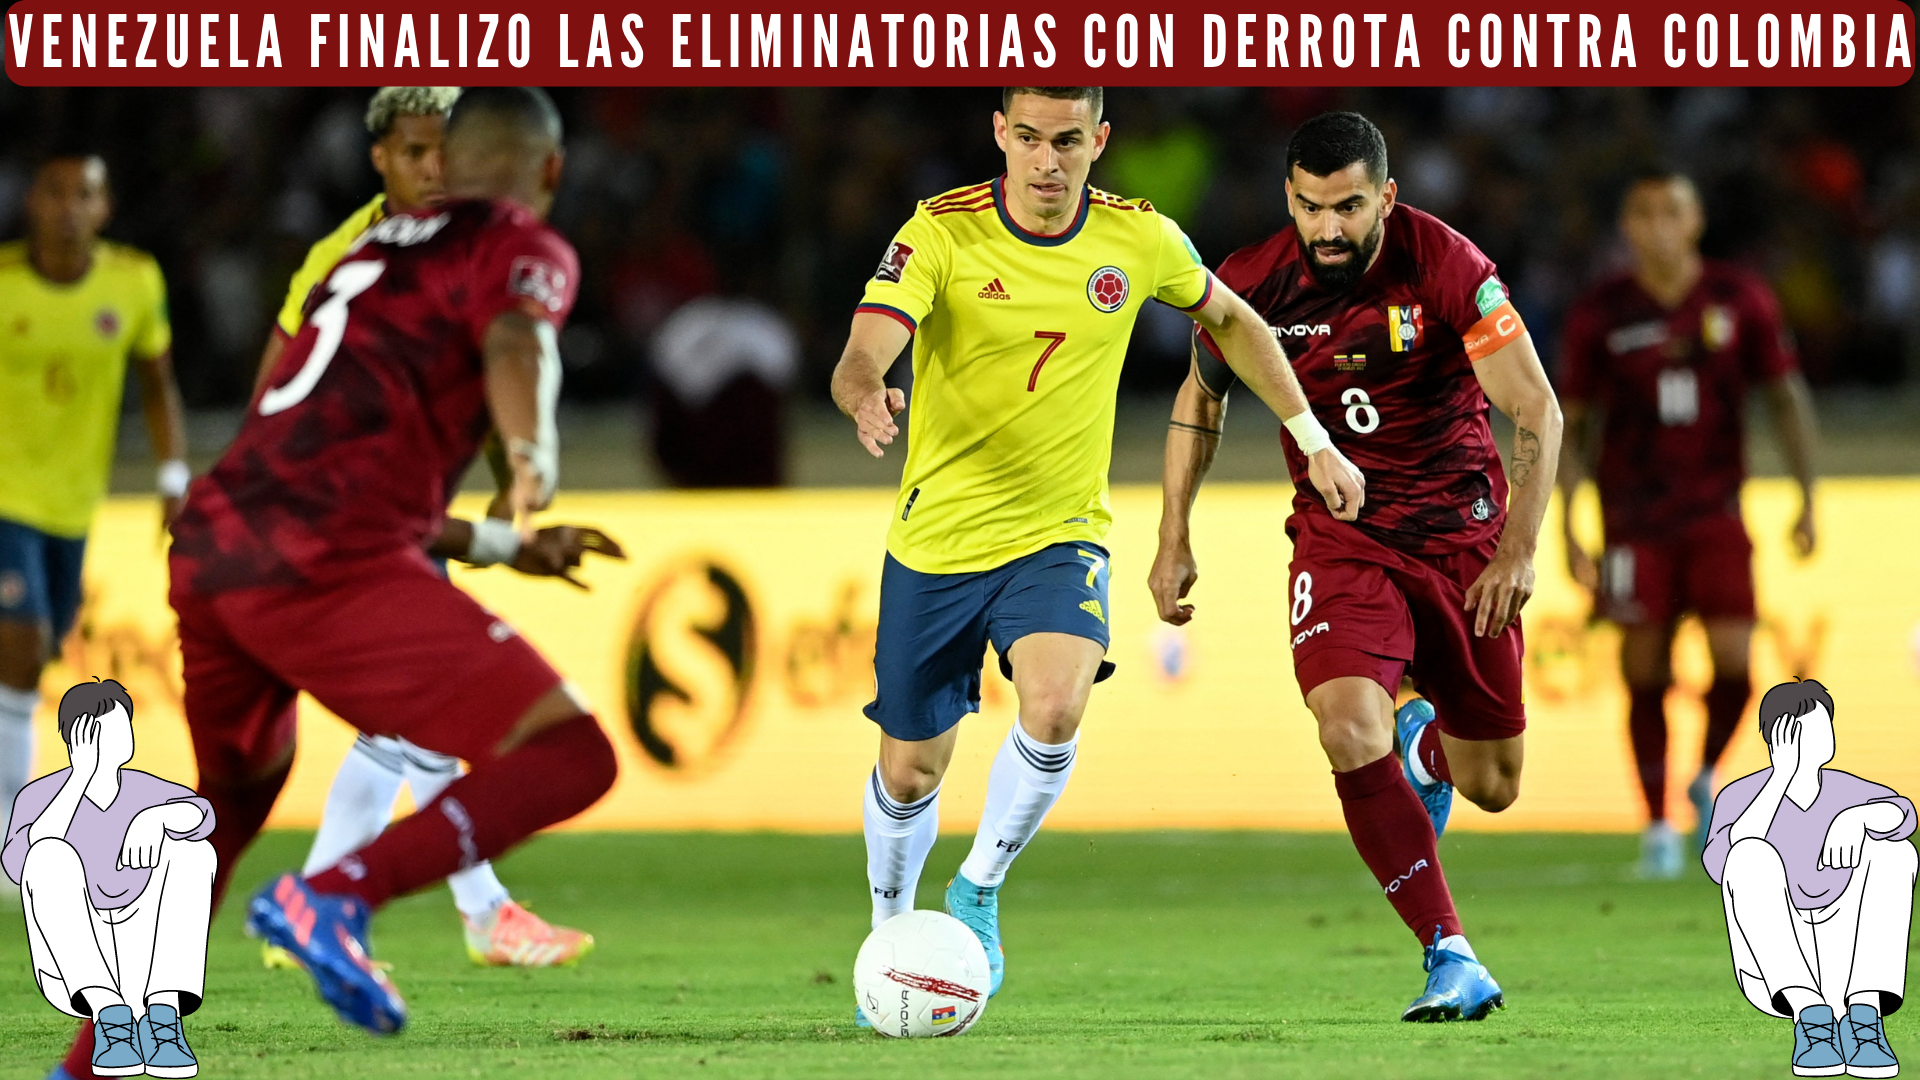 Venezuela finalizo las eliminatorias con derrota contra Colombia.png